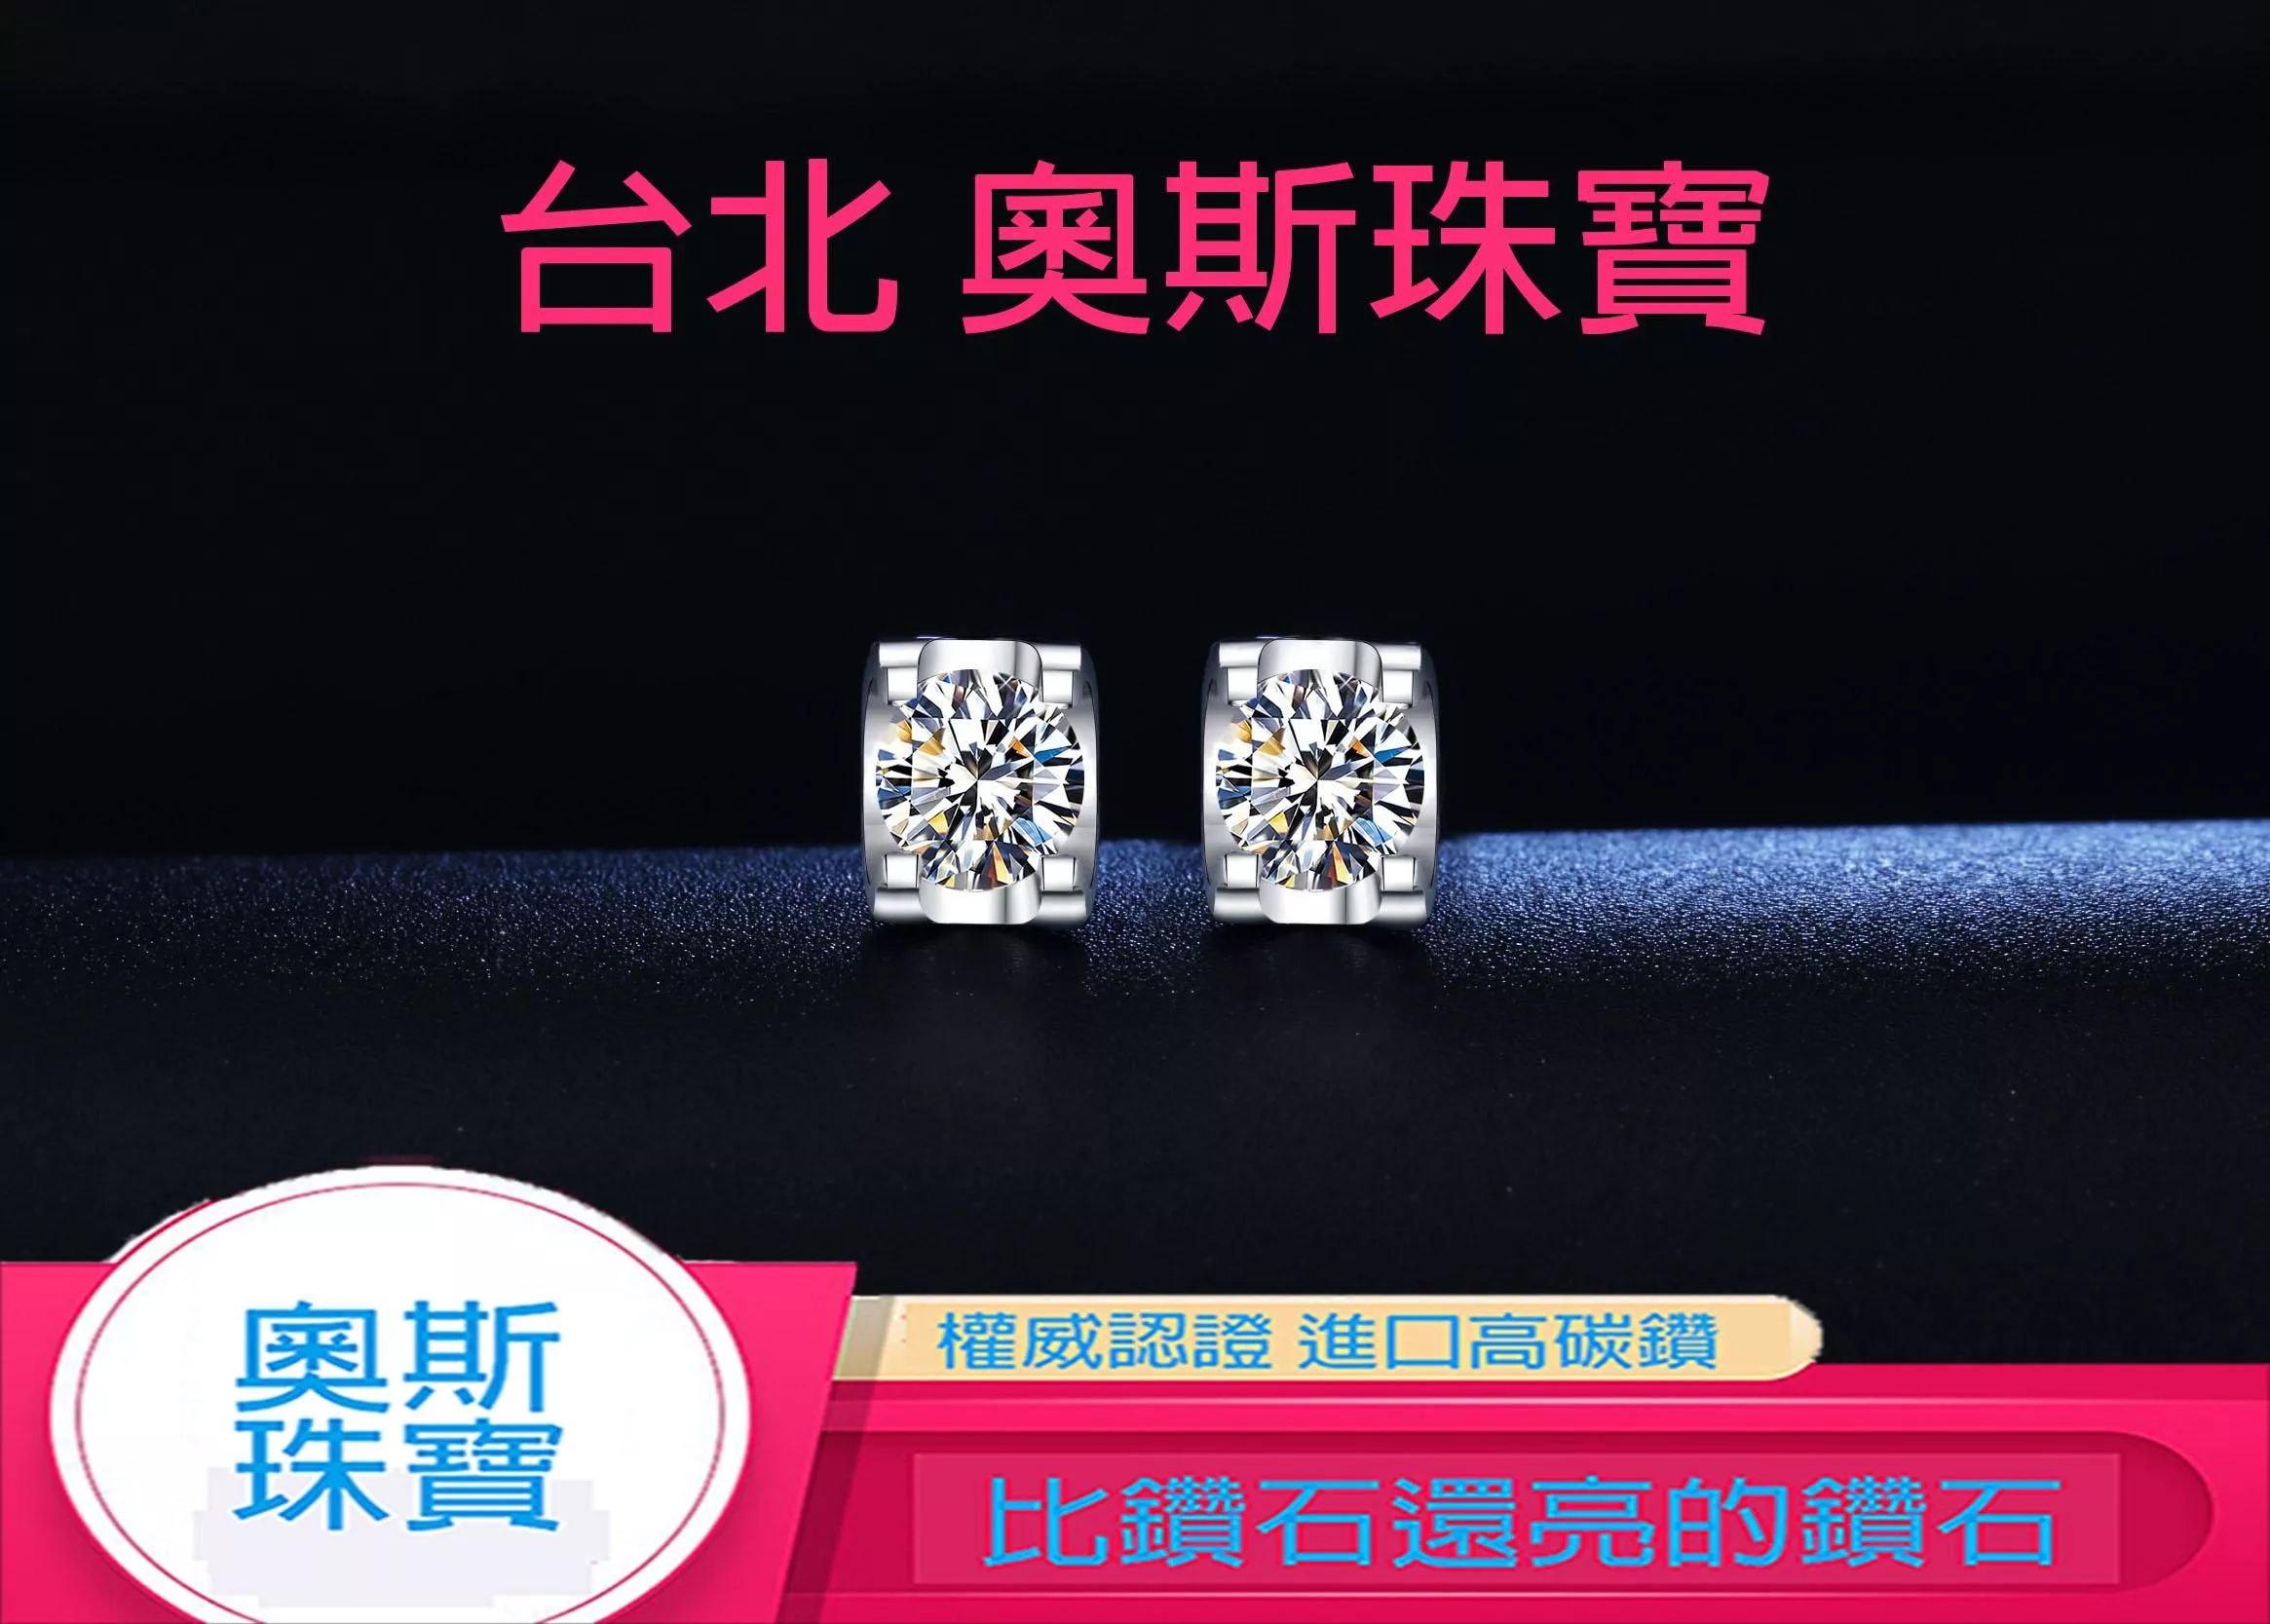 高碳鑽 0.6-3克拉牛頭款鑽耳環 台北門市 客製化訂製白金